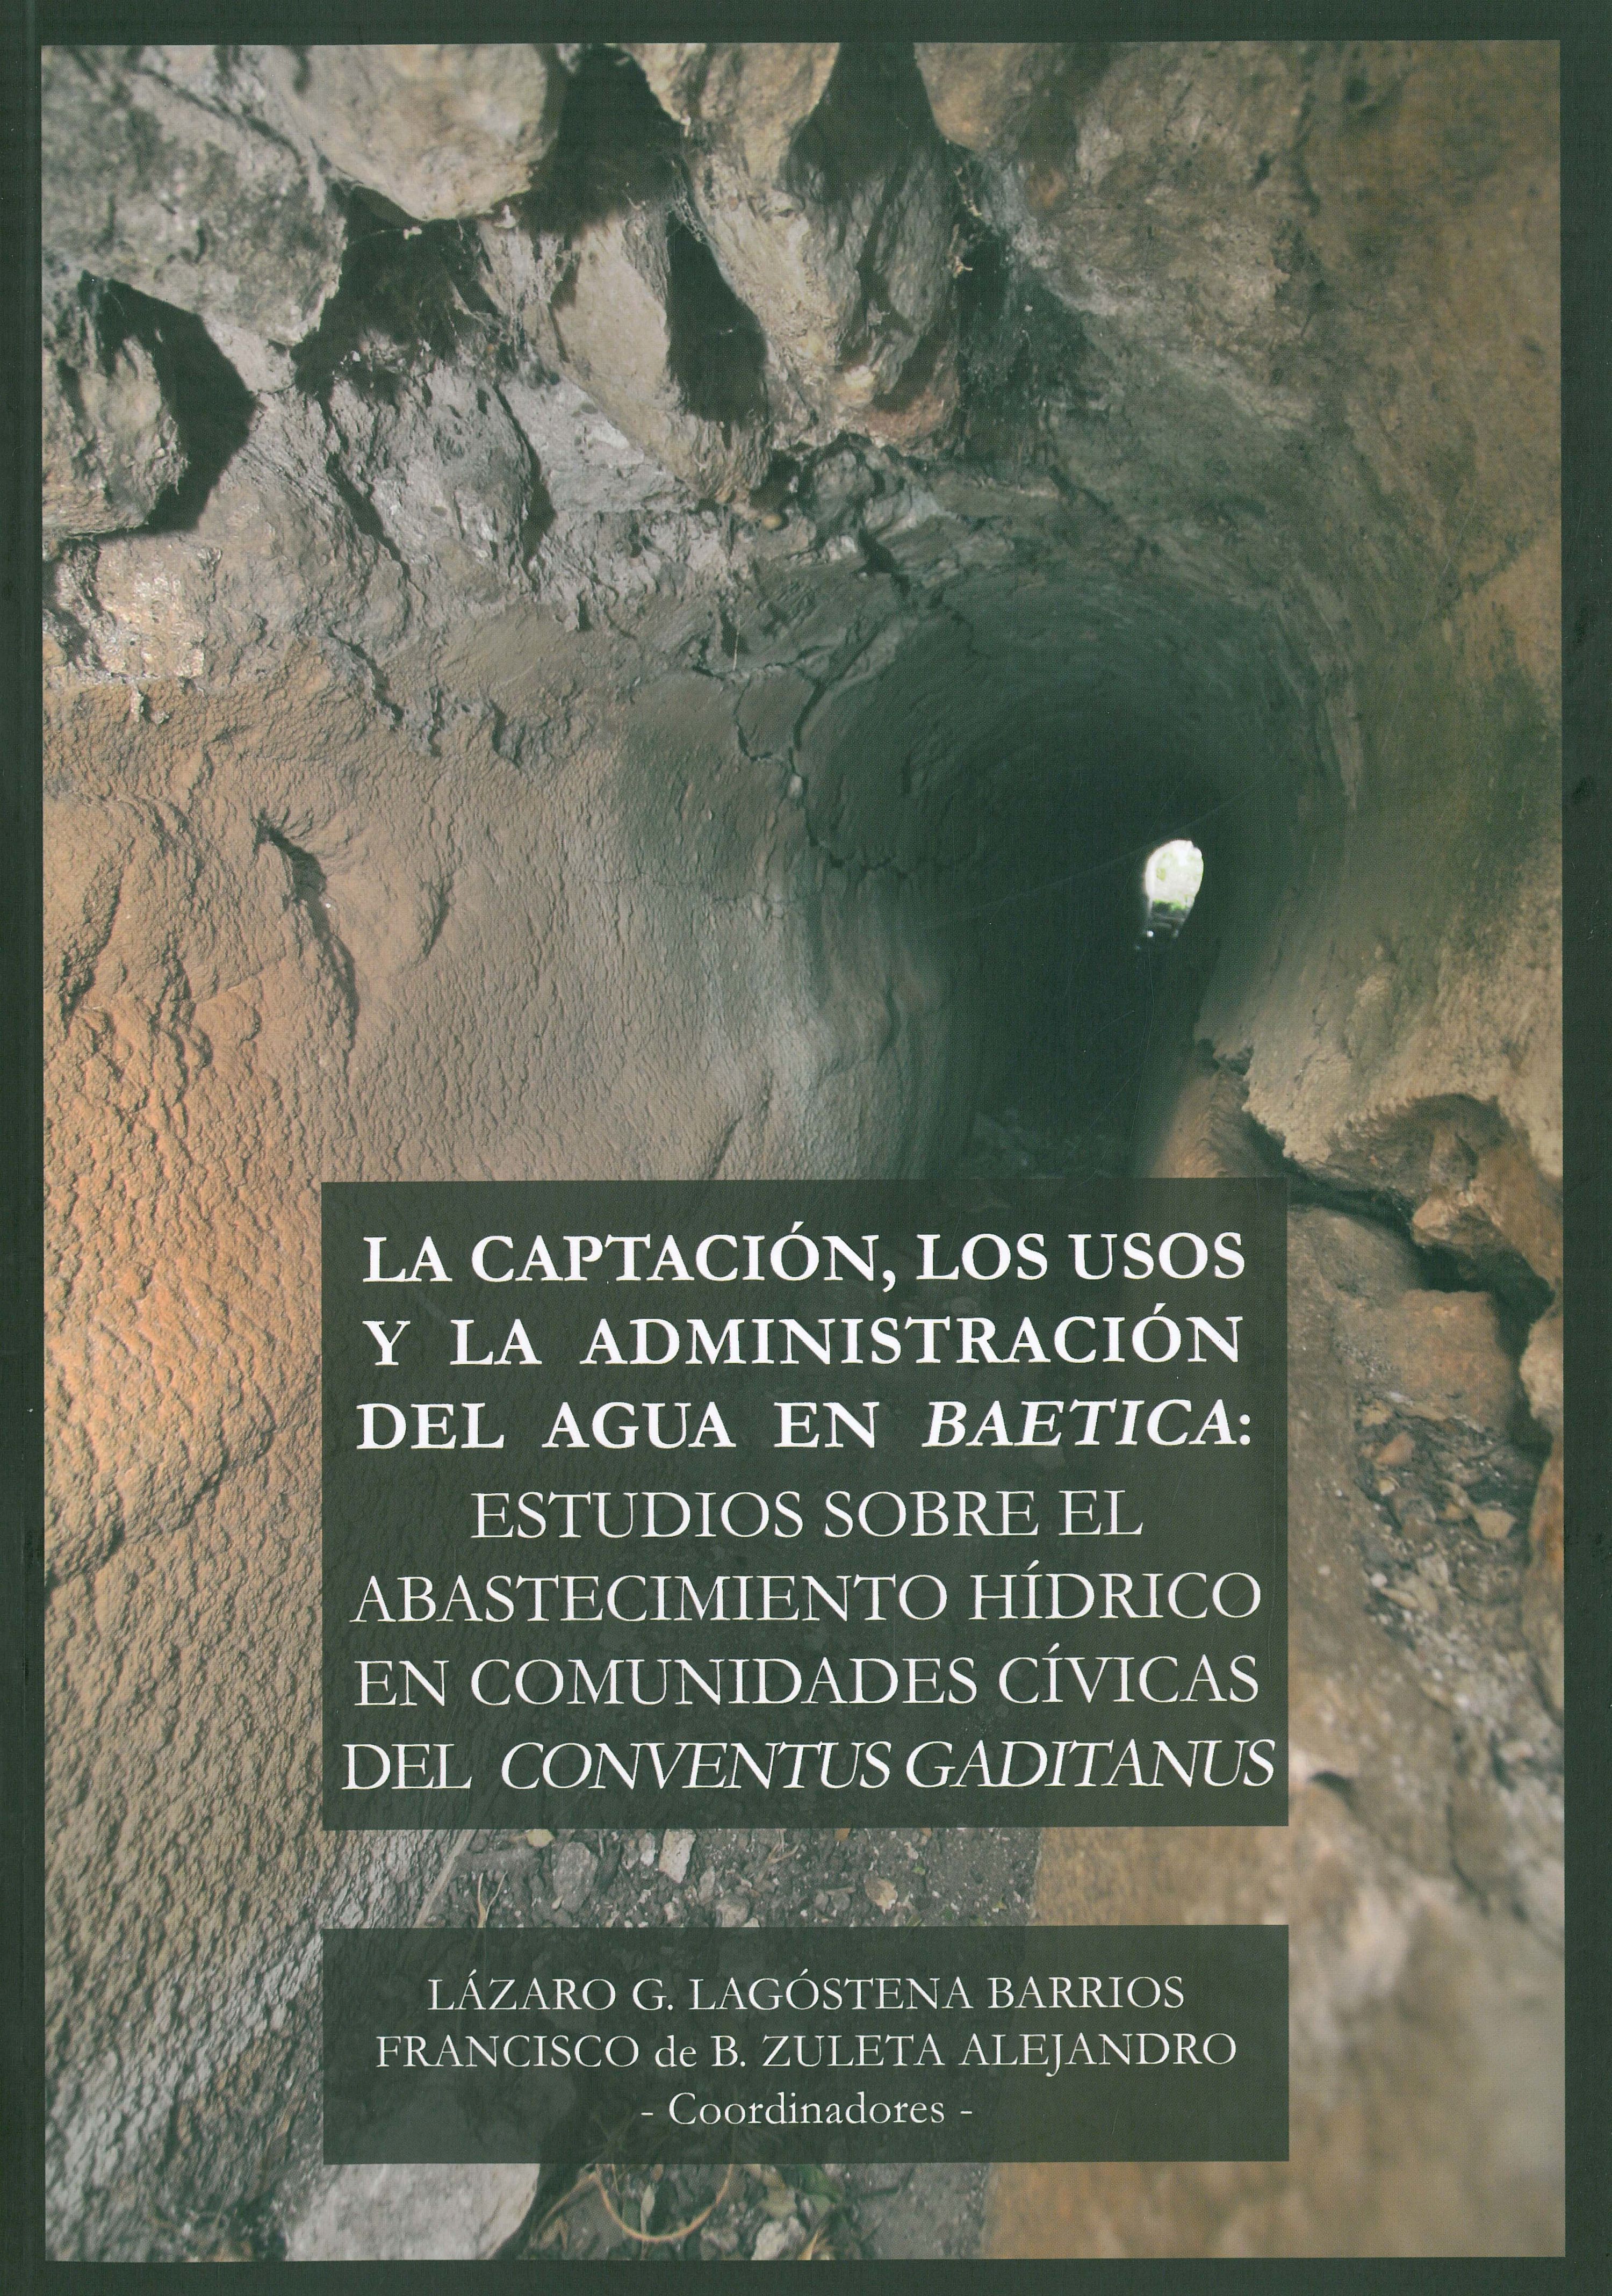 La captación, los usos y la administración del agua en 'Baetica'. 9788498282528